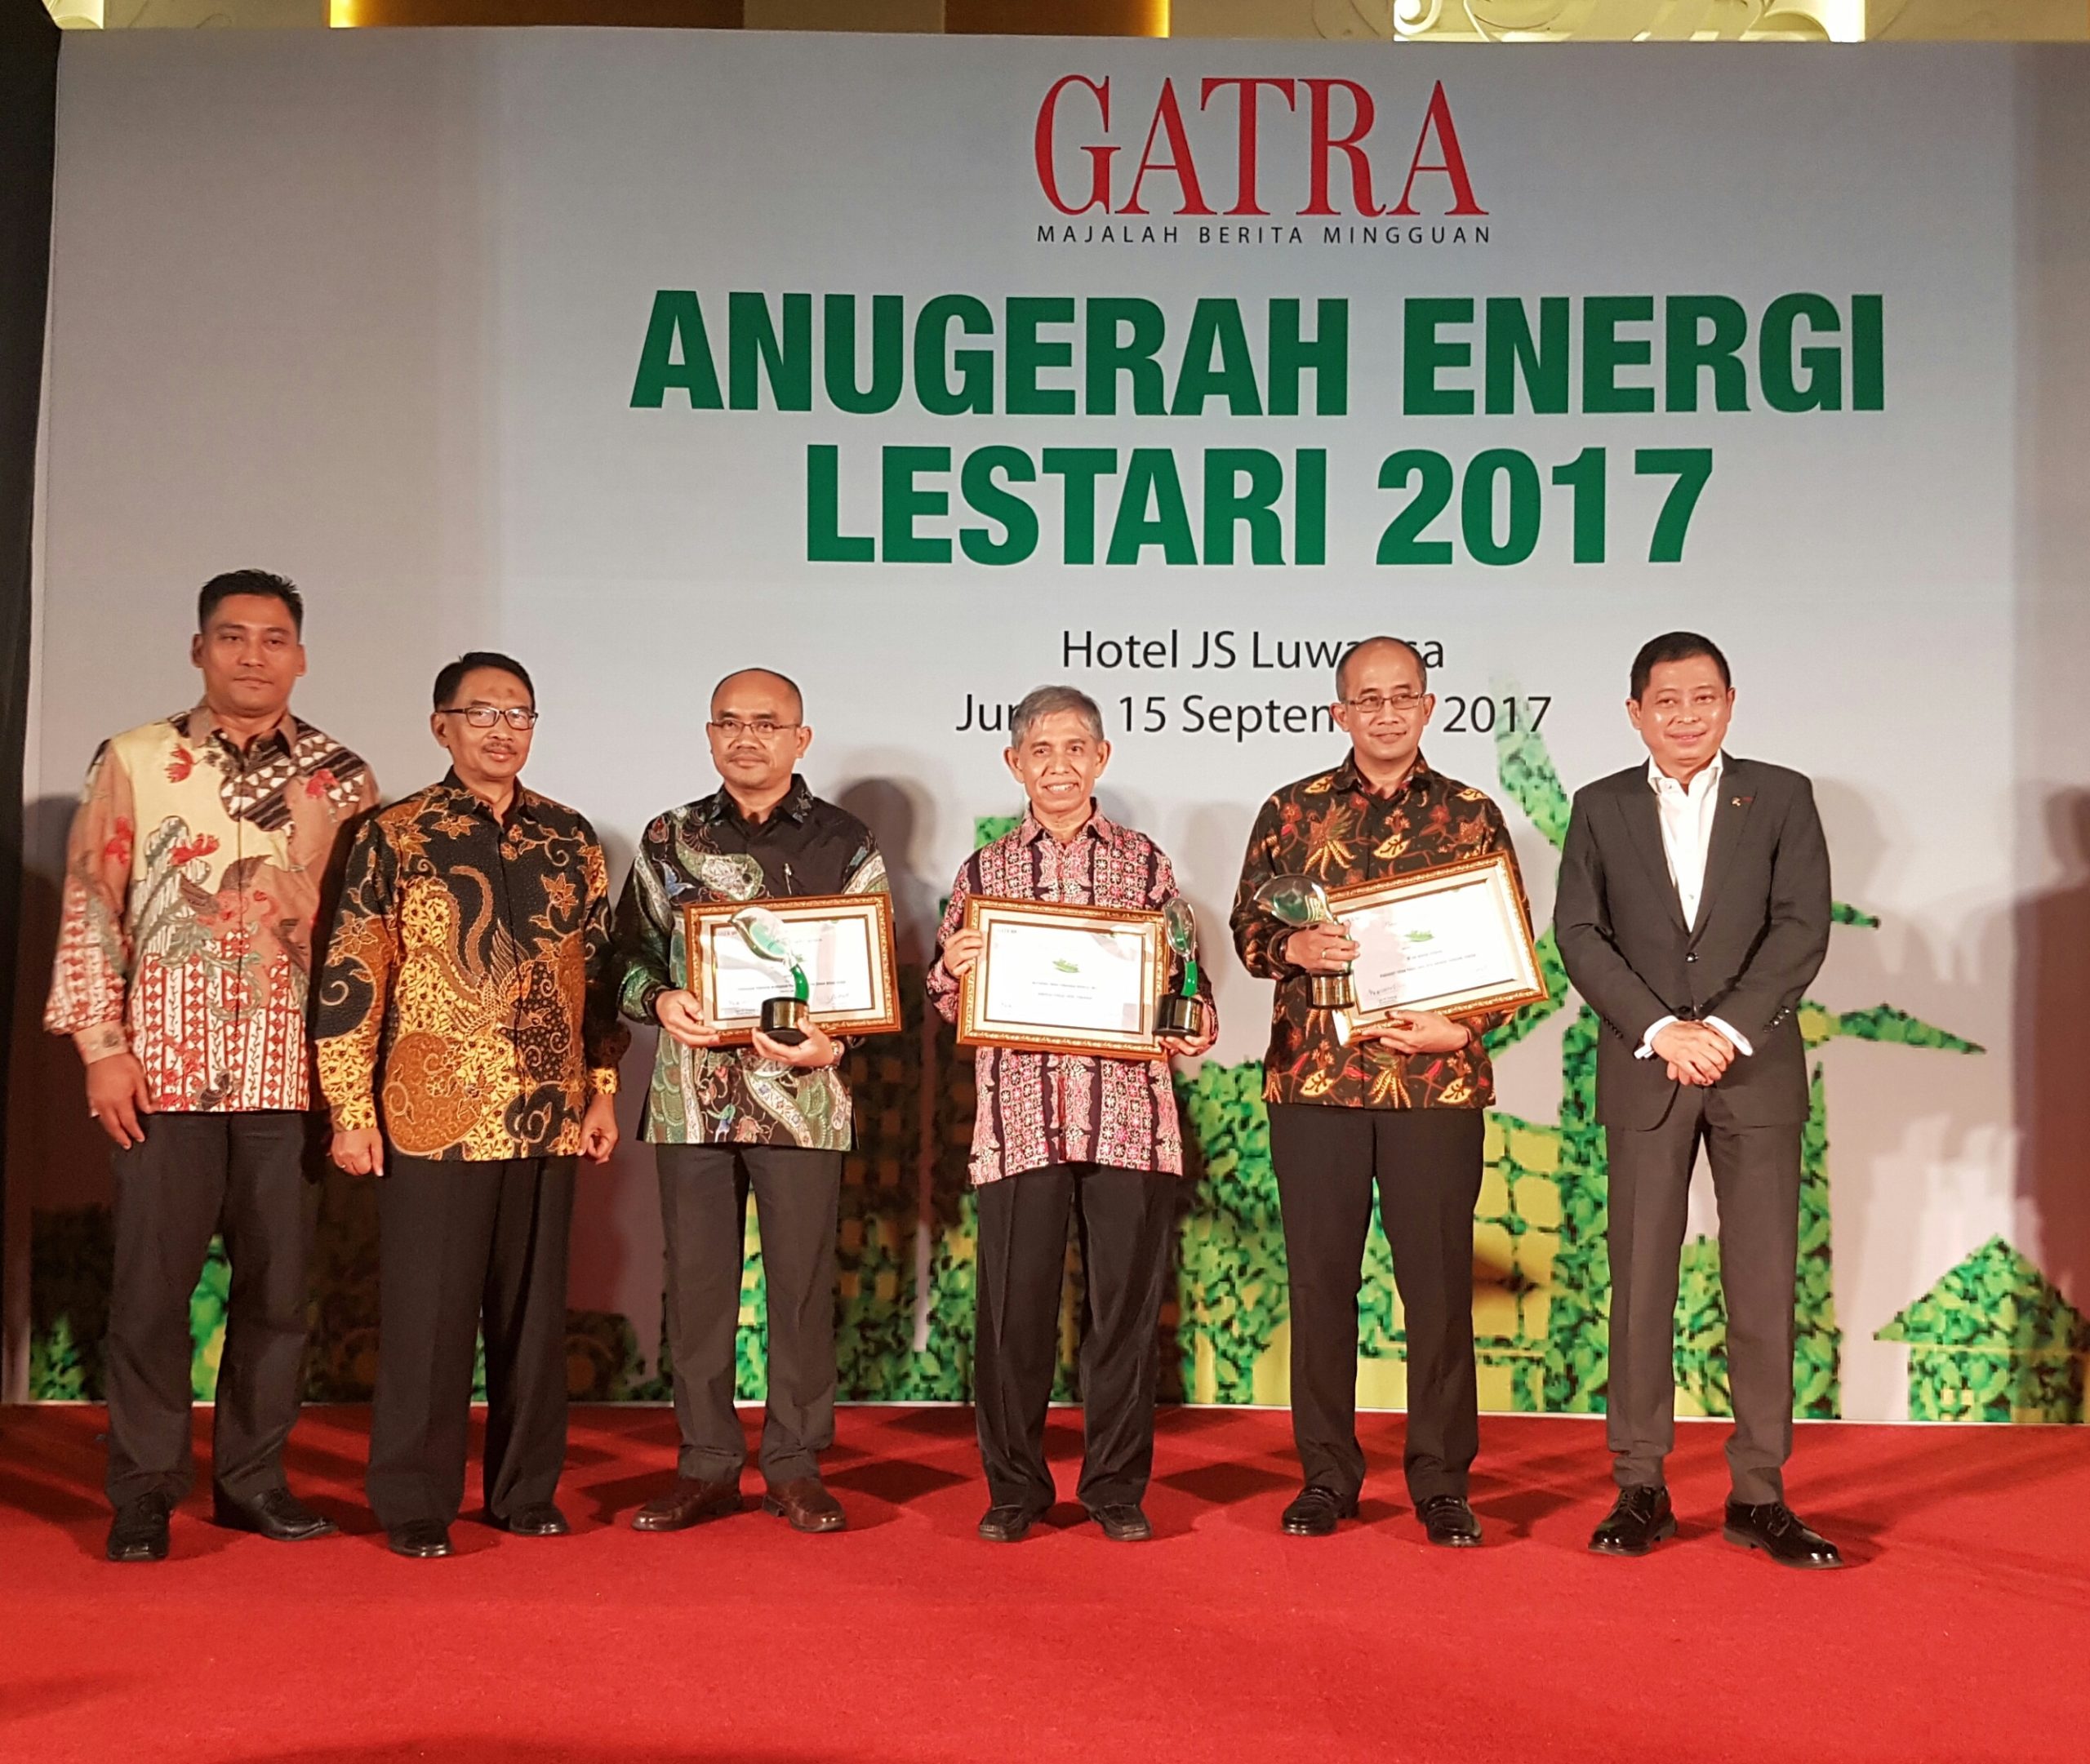 [Gatra & Jurnal Sumbar] Asian Agri wins the 2017 Energi Lestari Award